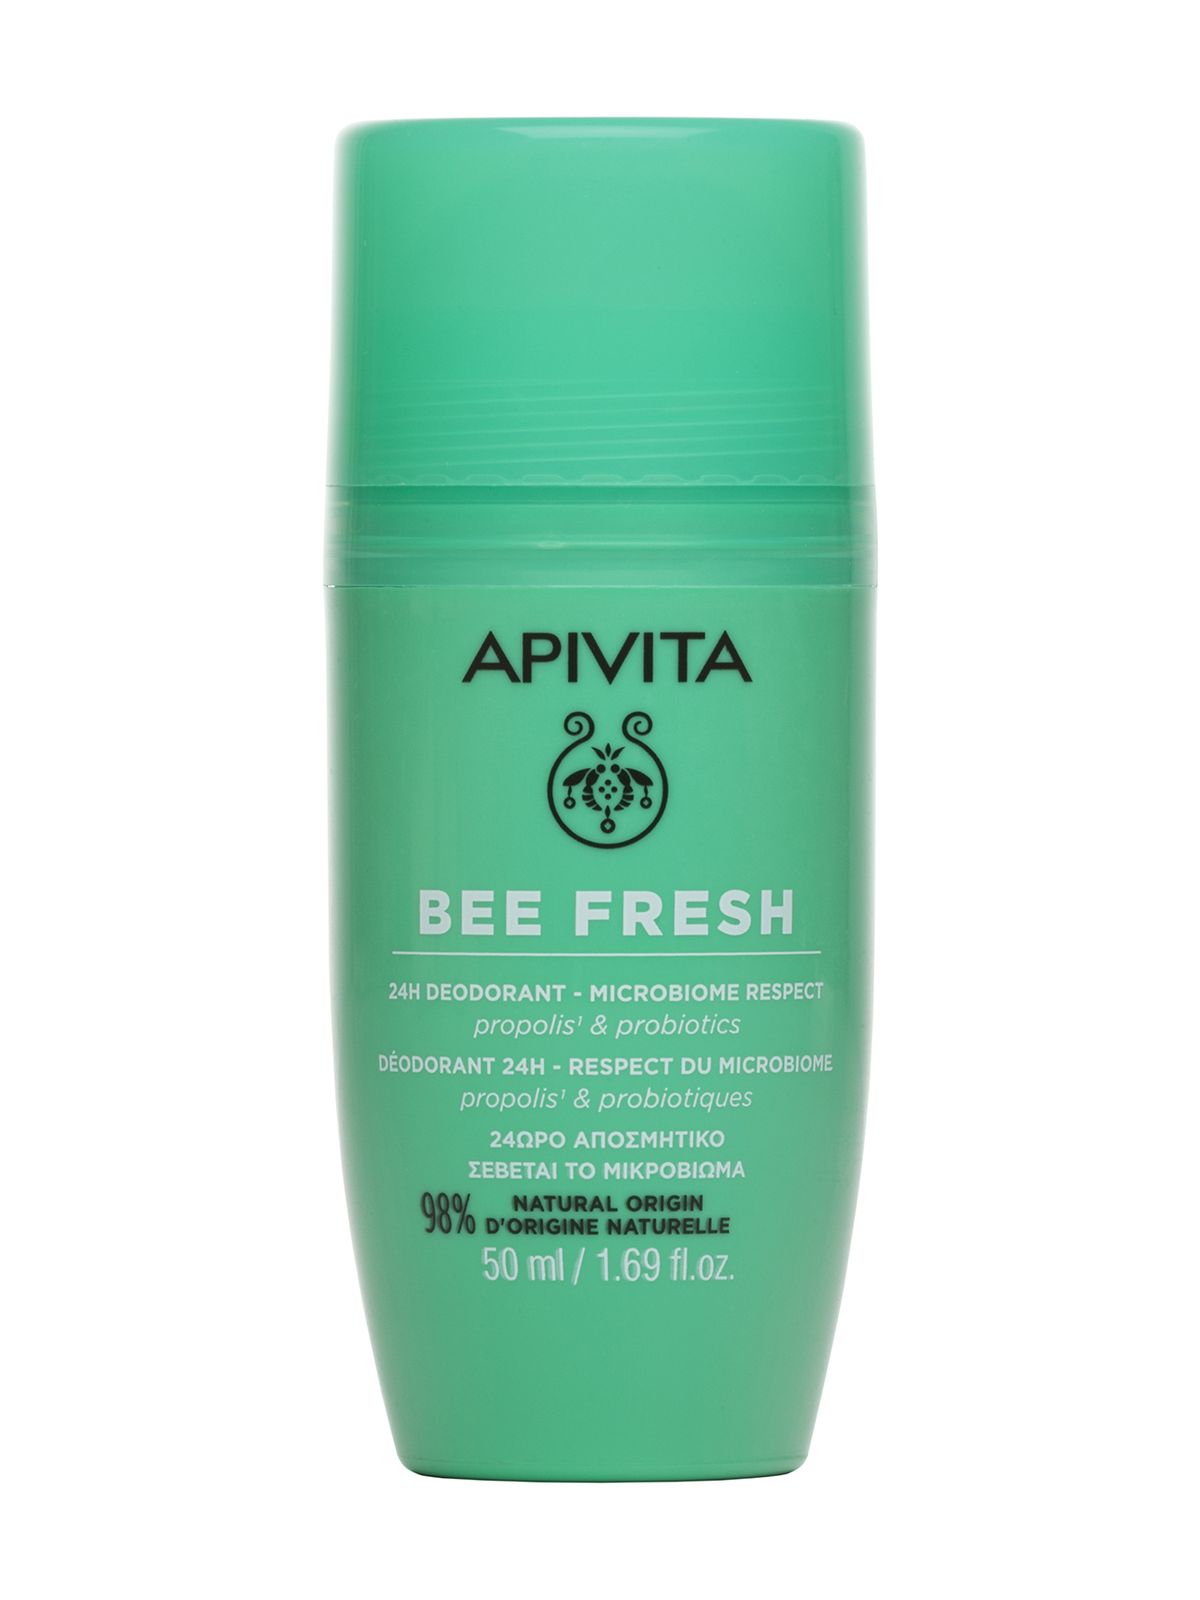 Дезодорант Apivita Bee Fresh 24H Deodorant Microbiome Respect Propolis & Probiotics masil шампунь для глубокого очищения кожи головы probiotics scalp scaling shampoo 300 мл